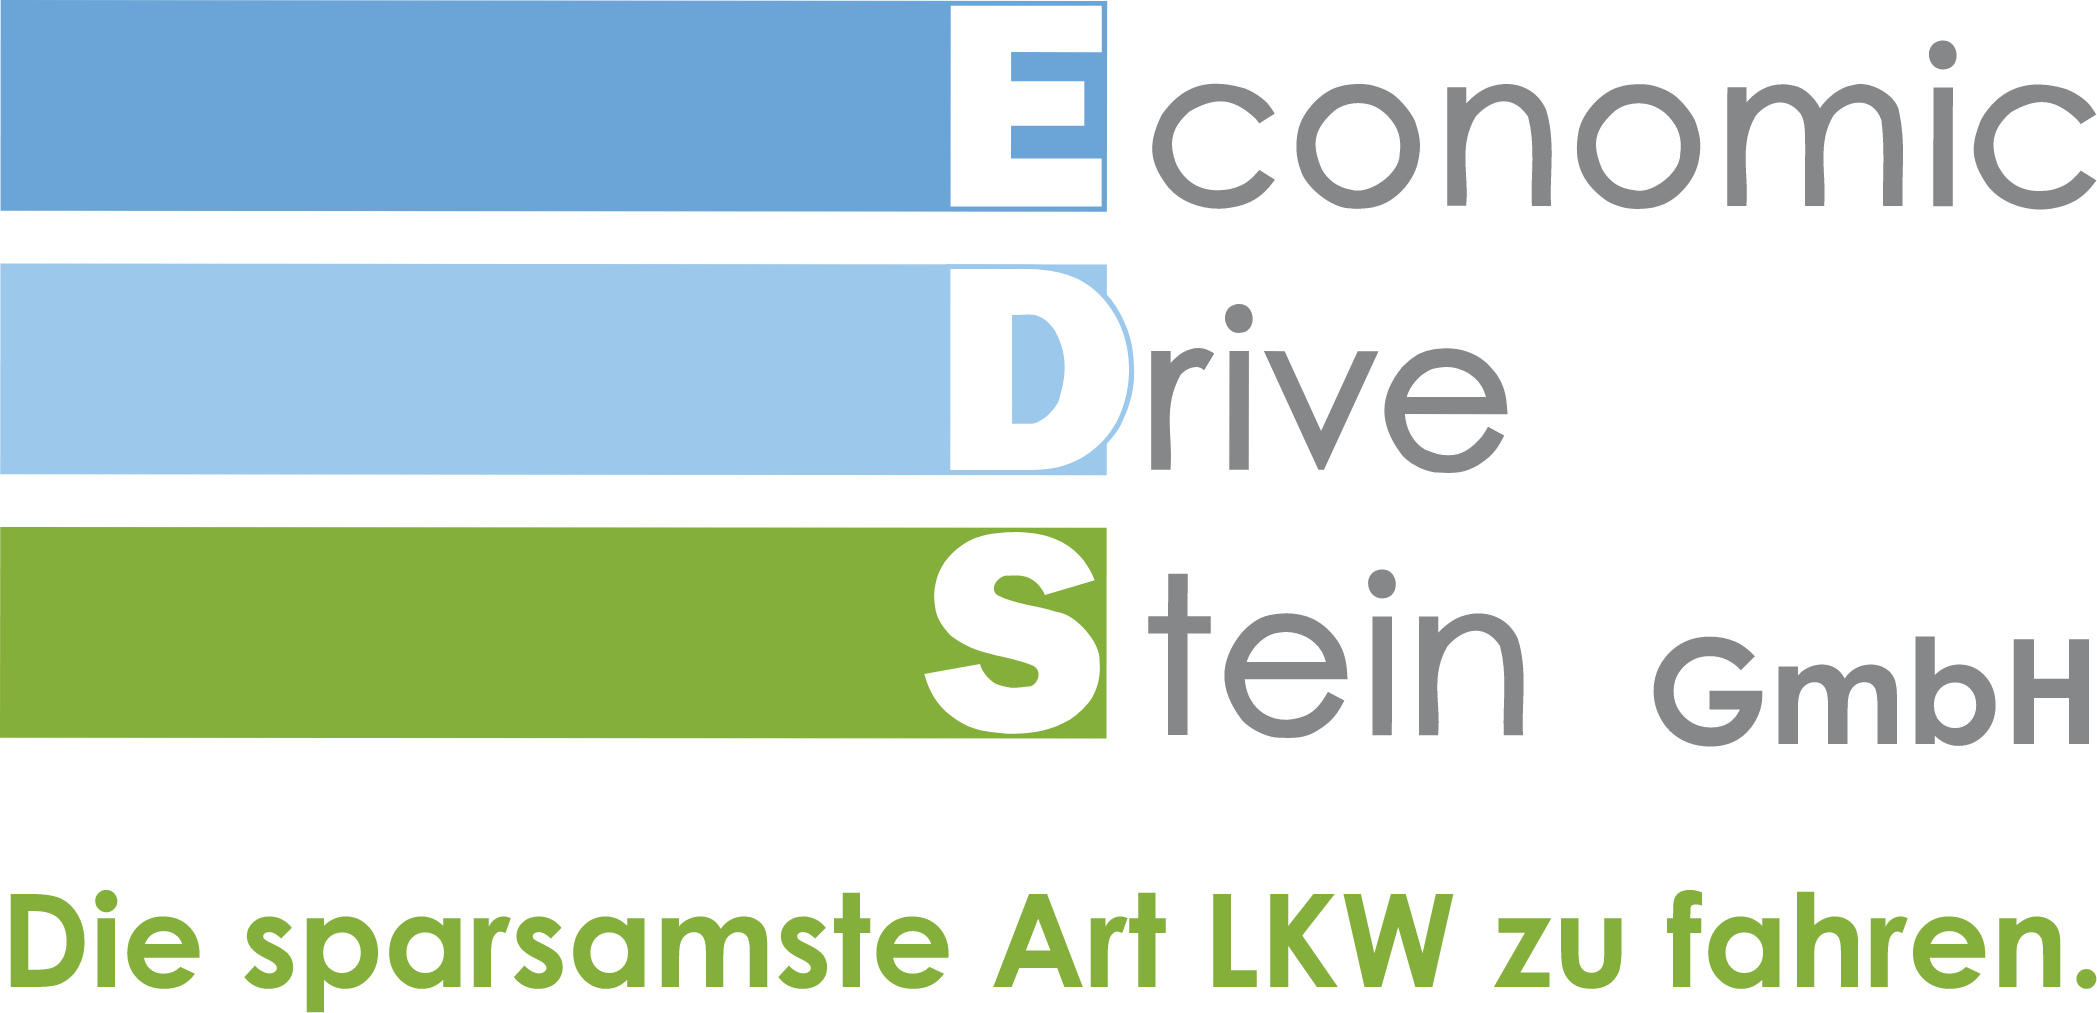 economic-drive-stein-essen-logo